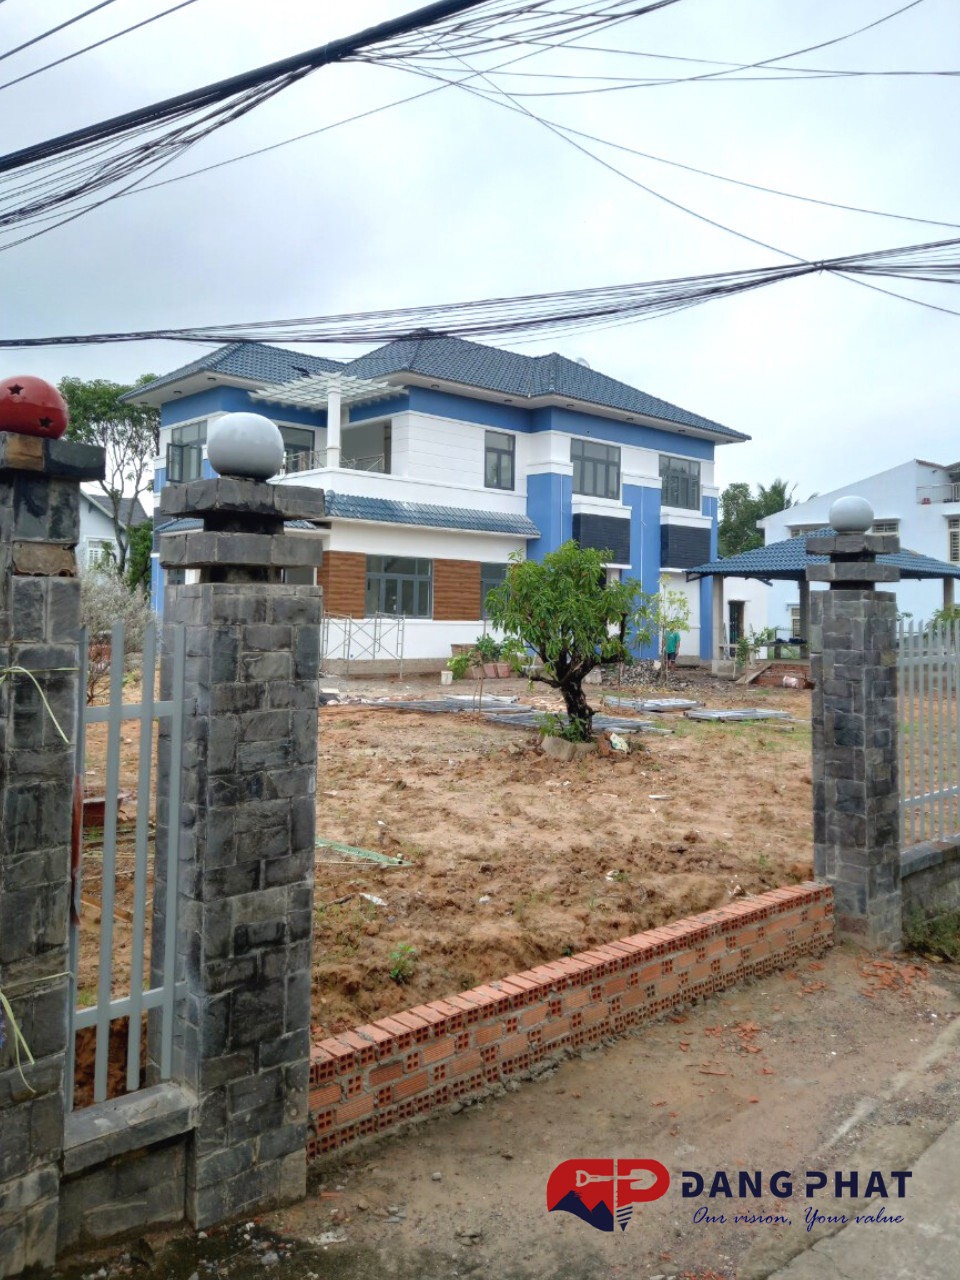 Dự án xây nhà trọn gói Tại Lái Thiêu Bình Dương của Đăng Phát